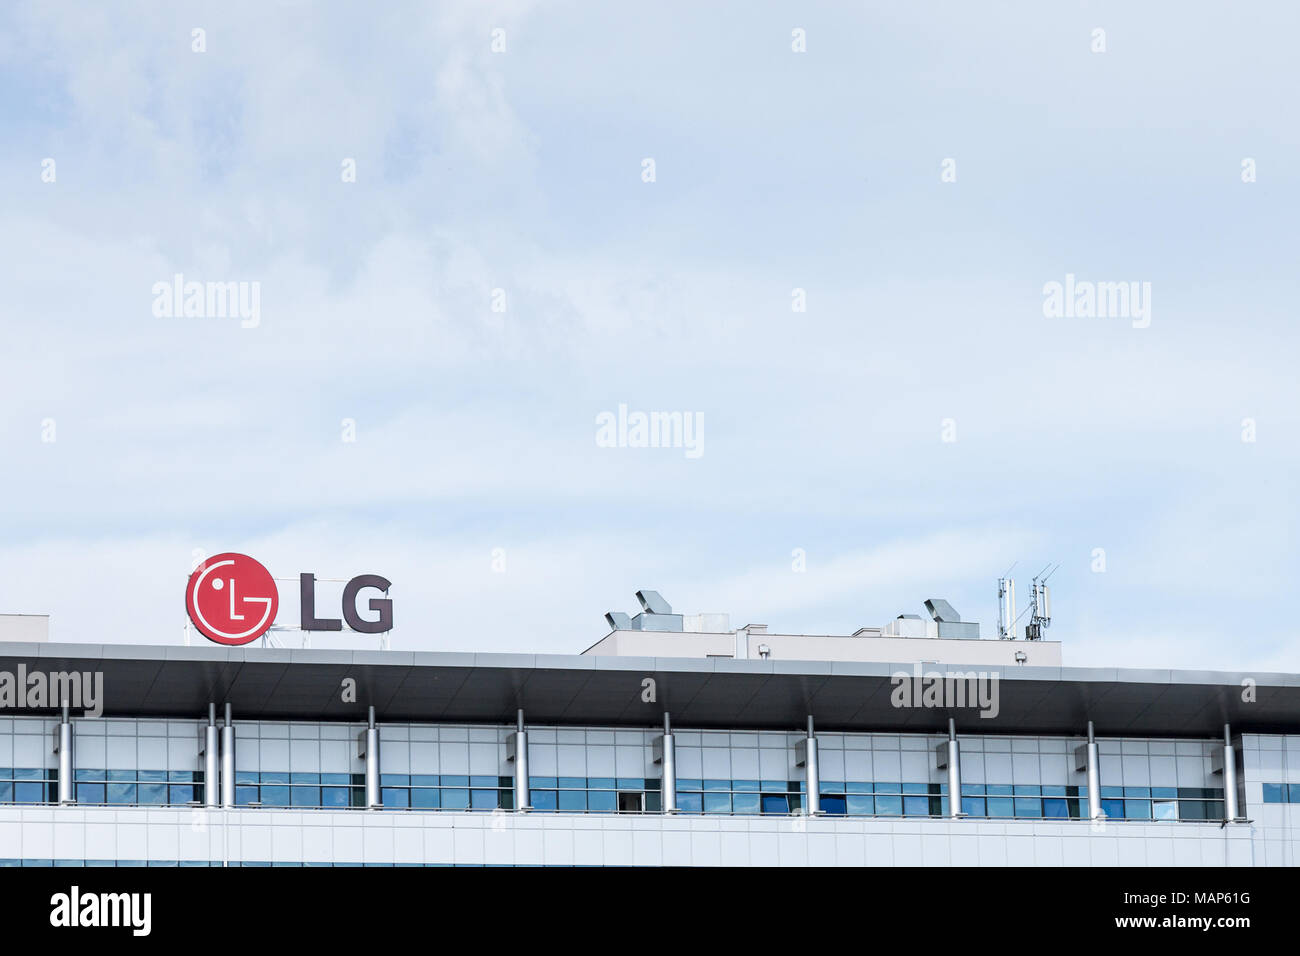 Belgrad, SERBIEN - 30. MÄRZ 2018: LG Electronics Logo auf Ihrer Hauptniederlassung für Serbien. LG ist eines der führenden Unternehmen in der IT- und TK-Technolog Stockfoto